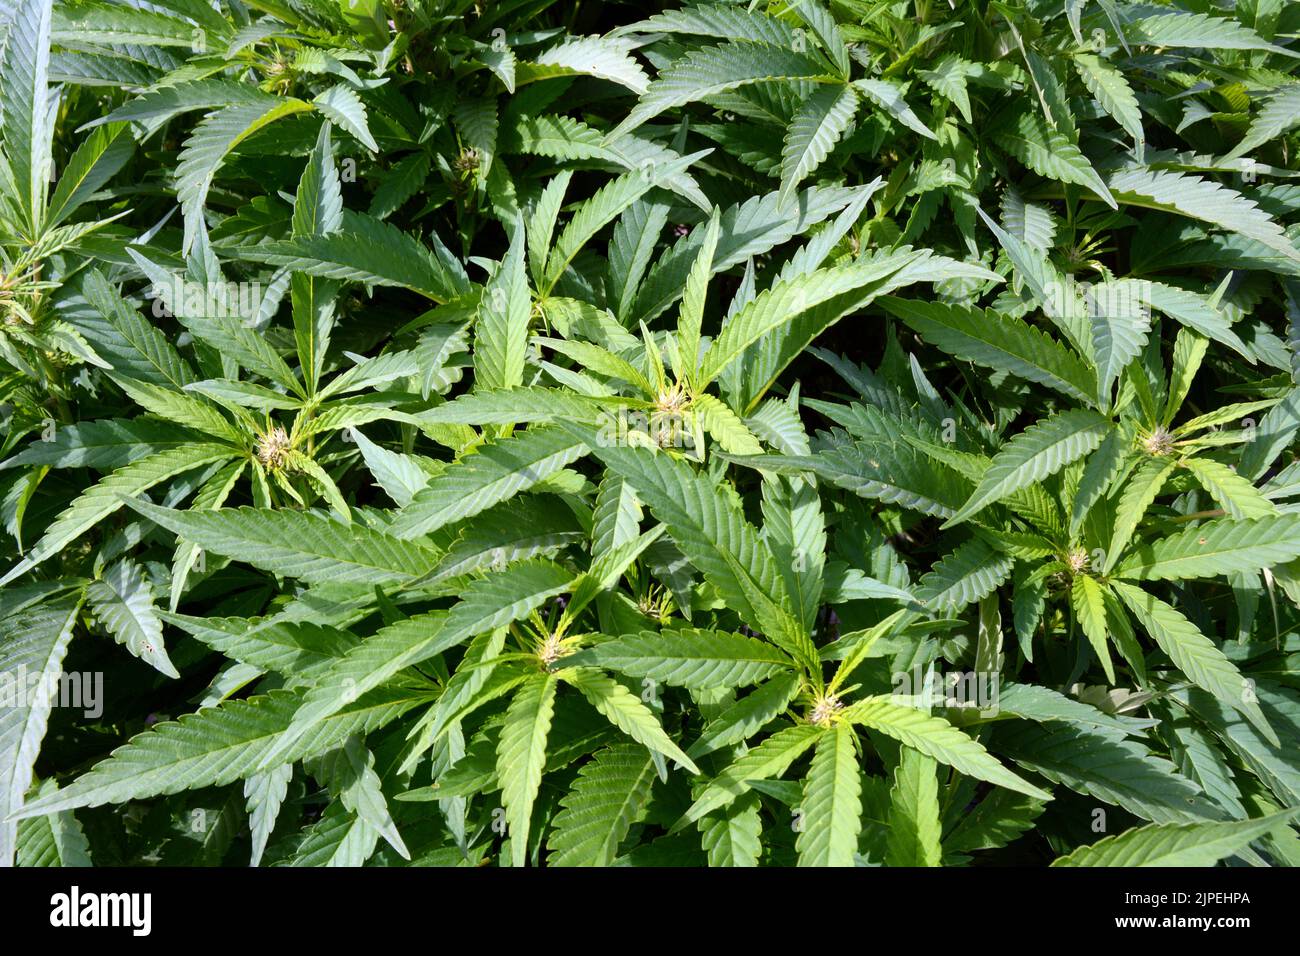 La marijuana ricreativa legale o le piante di cannabis sono cresciute all'aperto in una fattoria sostenibile vicino alla città di Creemore, Ontario, Canada. Foto Stock